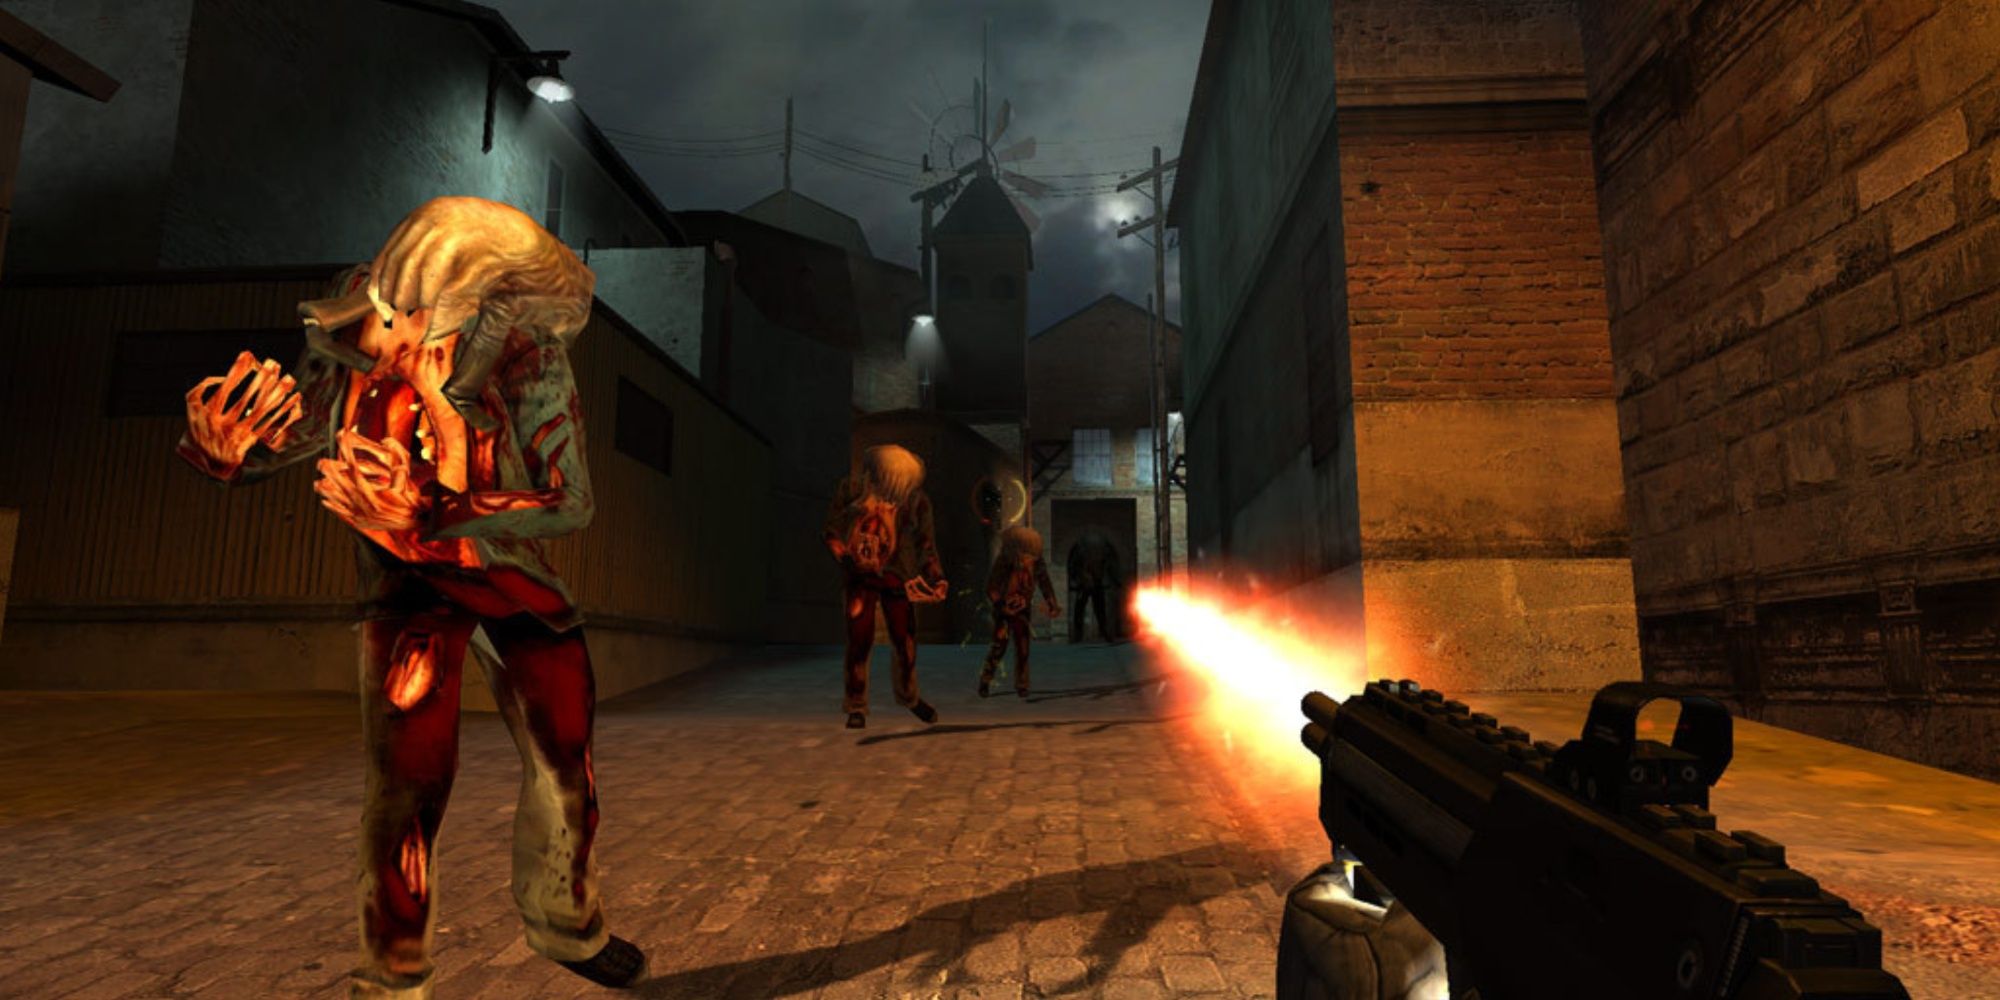 Shooting enemies in Half-Life 2